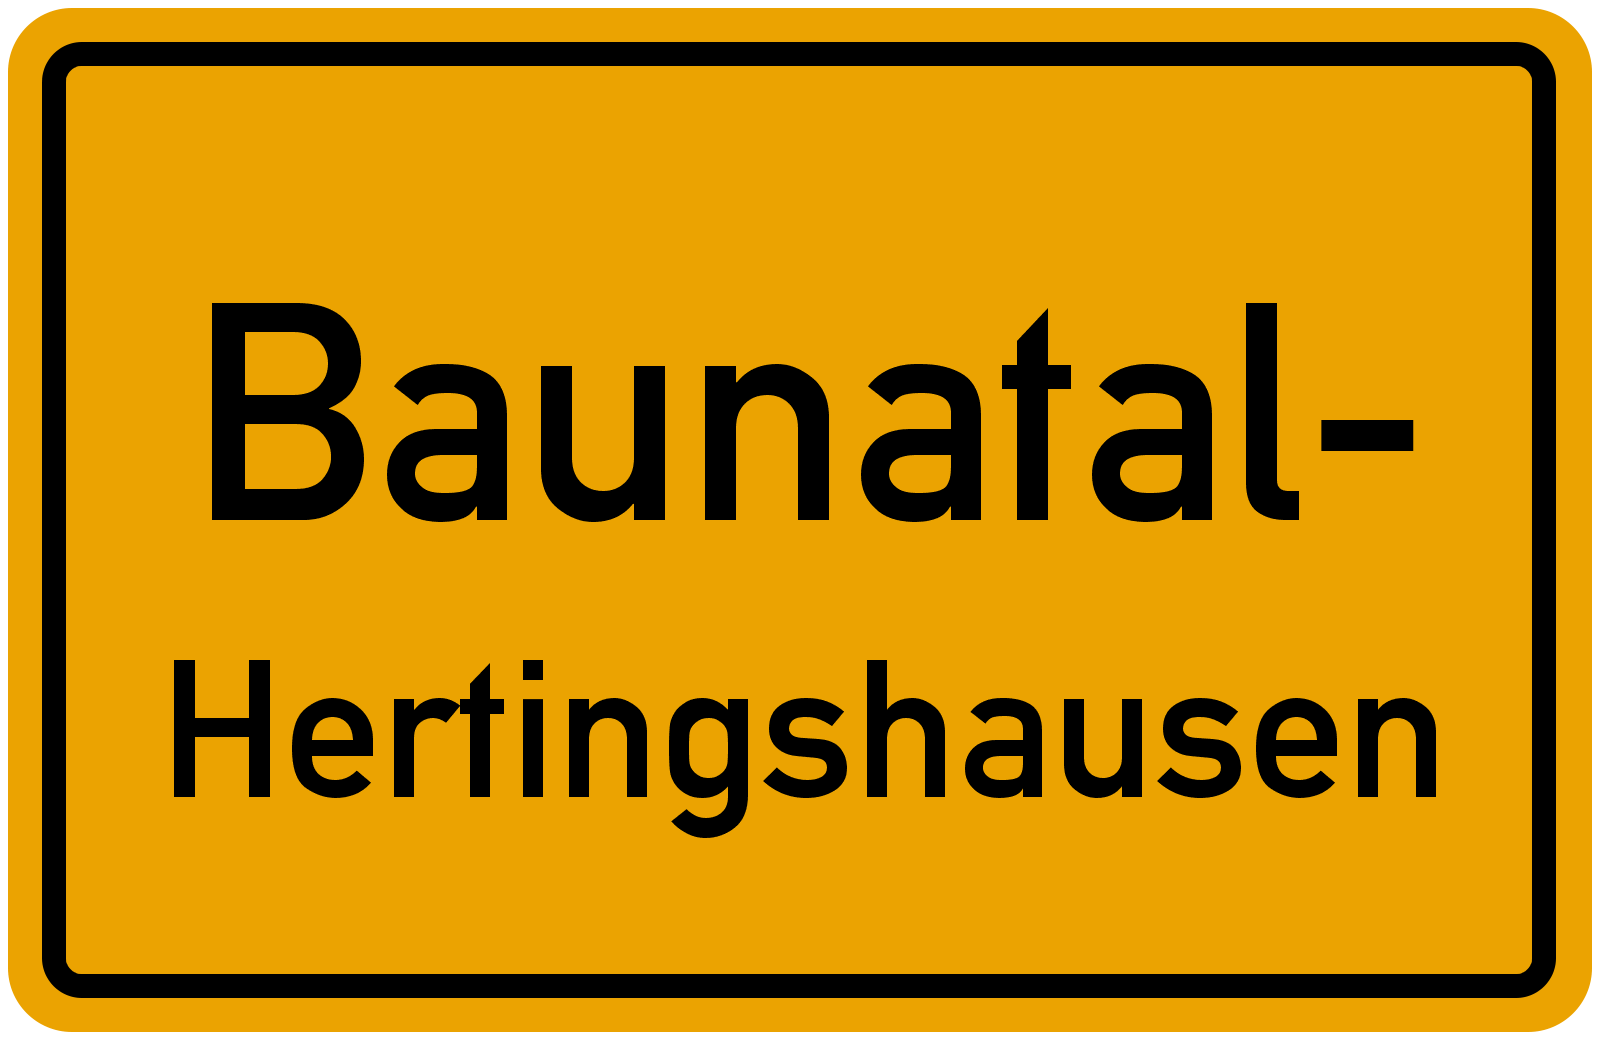 Hertingshausen